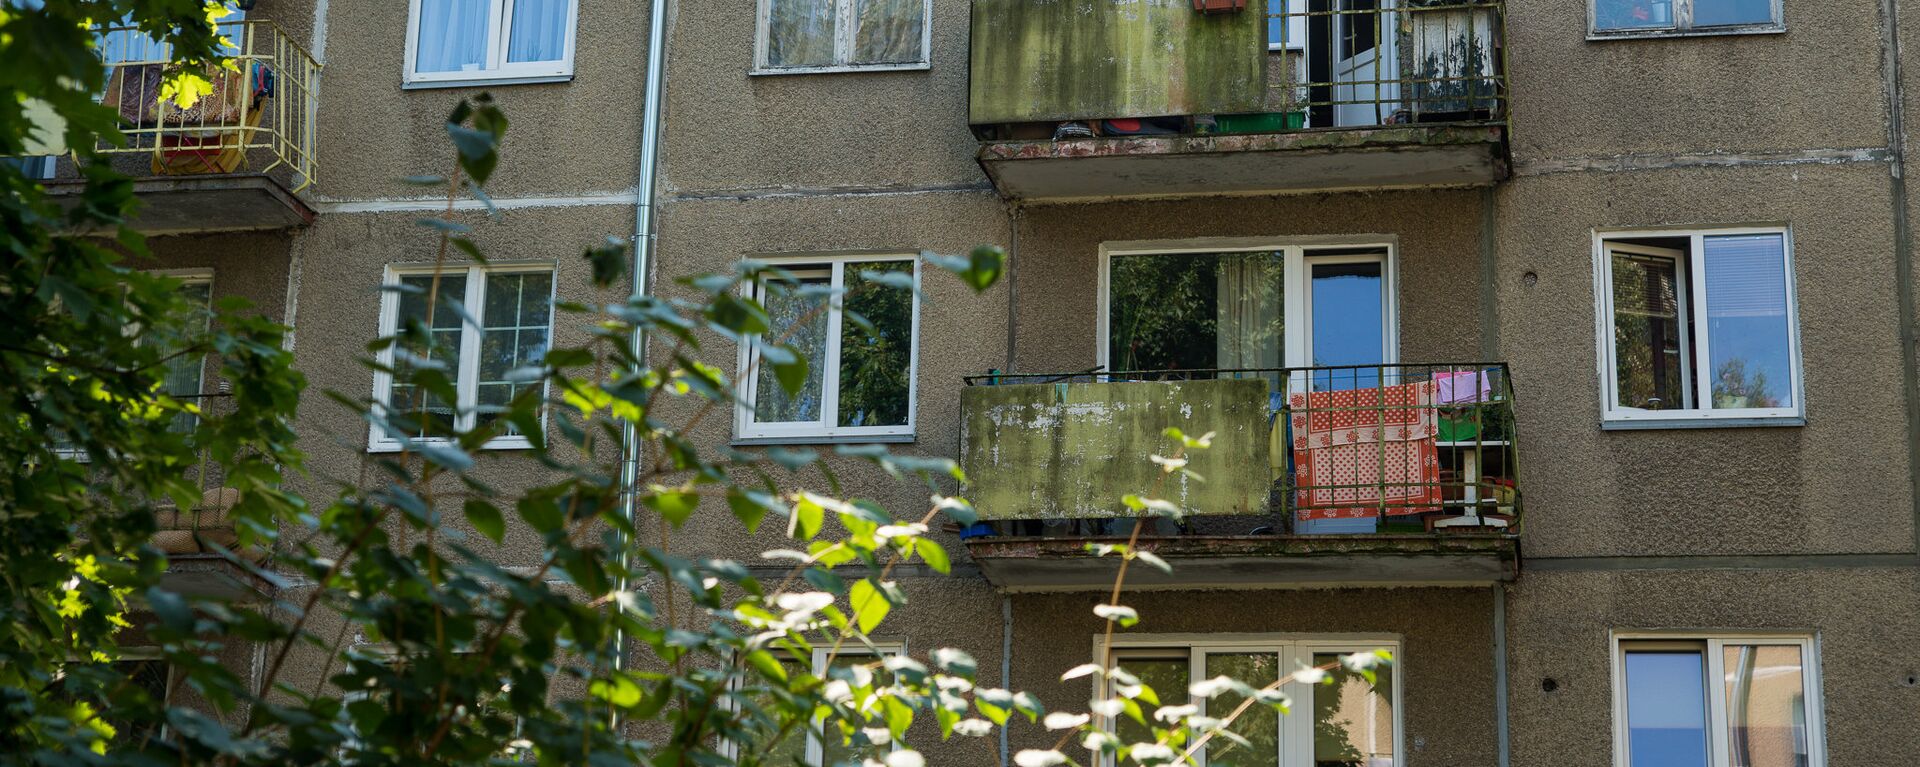 Многоквартирный дом по адресу ул. Юглас 37 - Sputnik Латвия, 1920, 20.08.2021